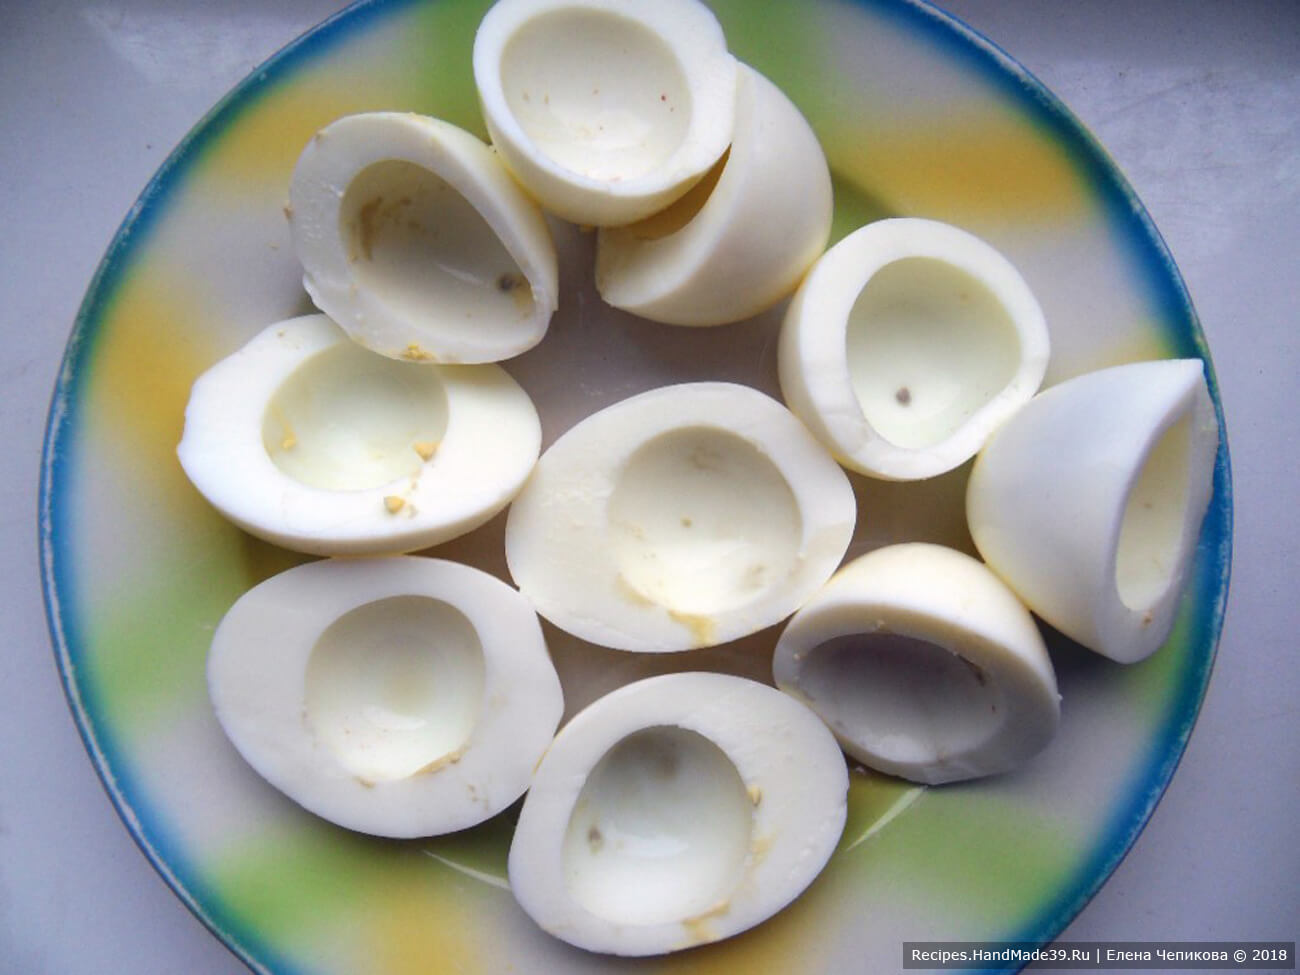 Яйца сварить вкрутую. Остудить. Очистить. Каждое яйцо разрезать вдоль или поперёк (как хотите). Вынуть желток